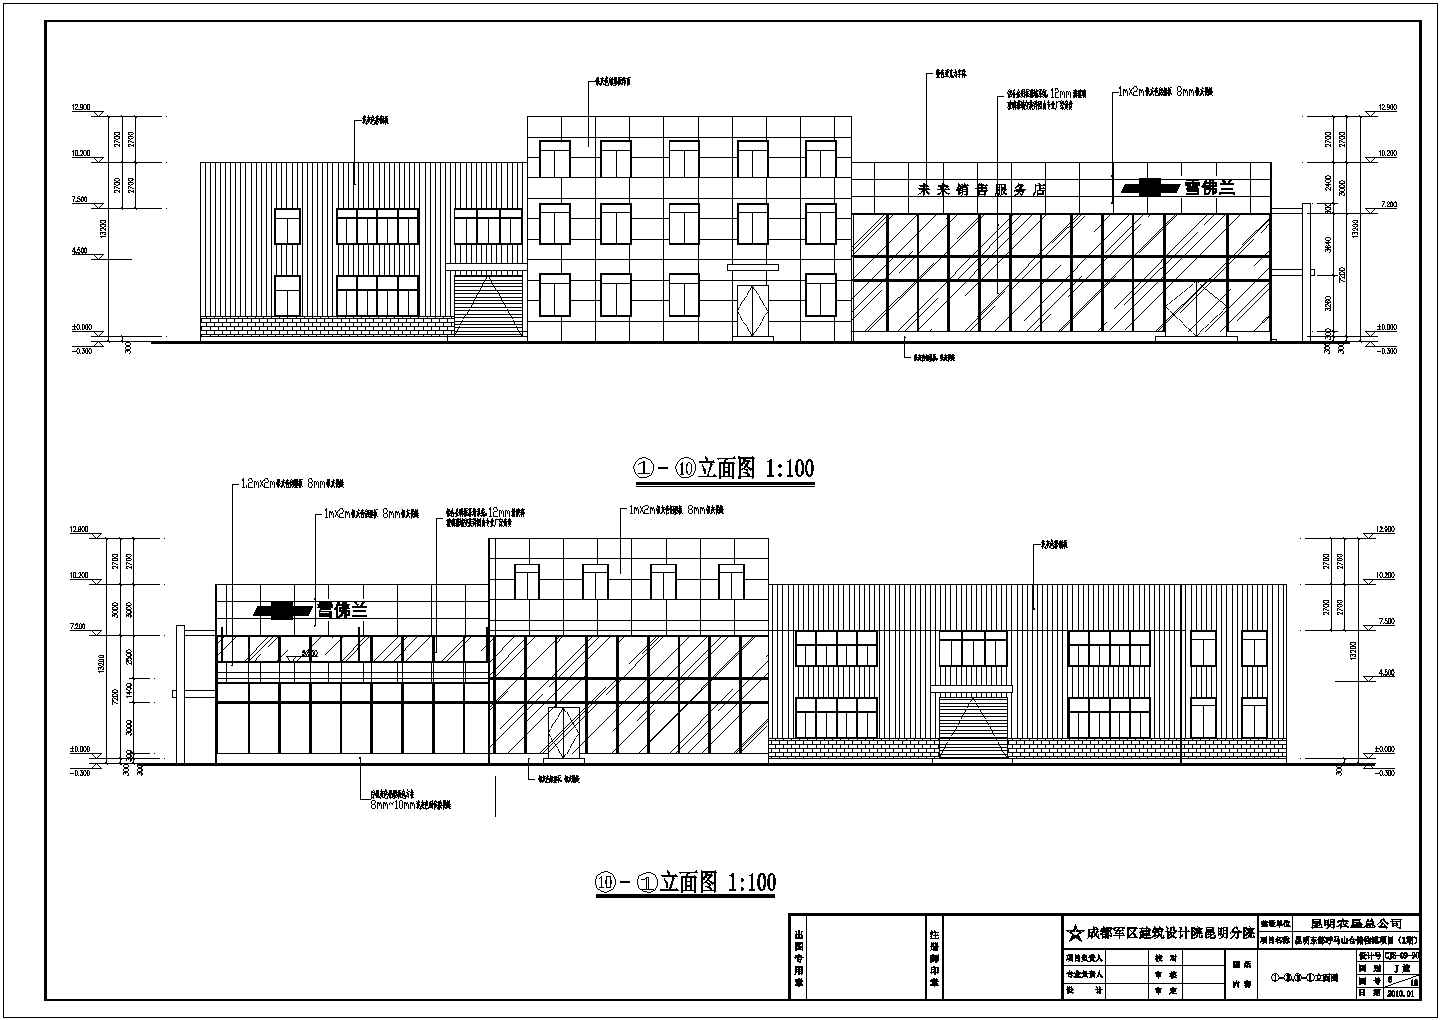 雪佛兰汽车4S店建筑及装修设计图